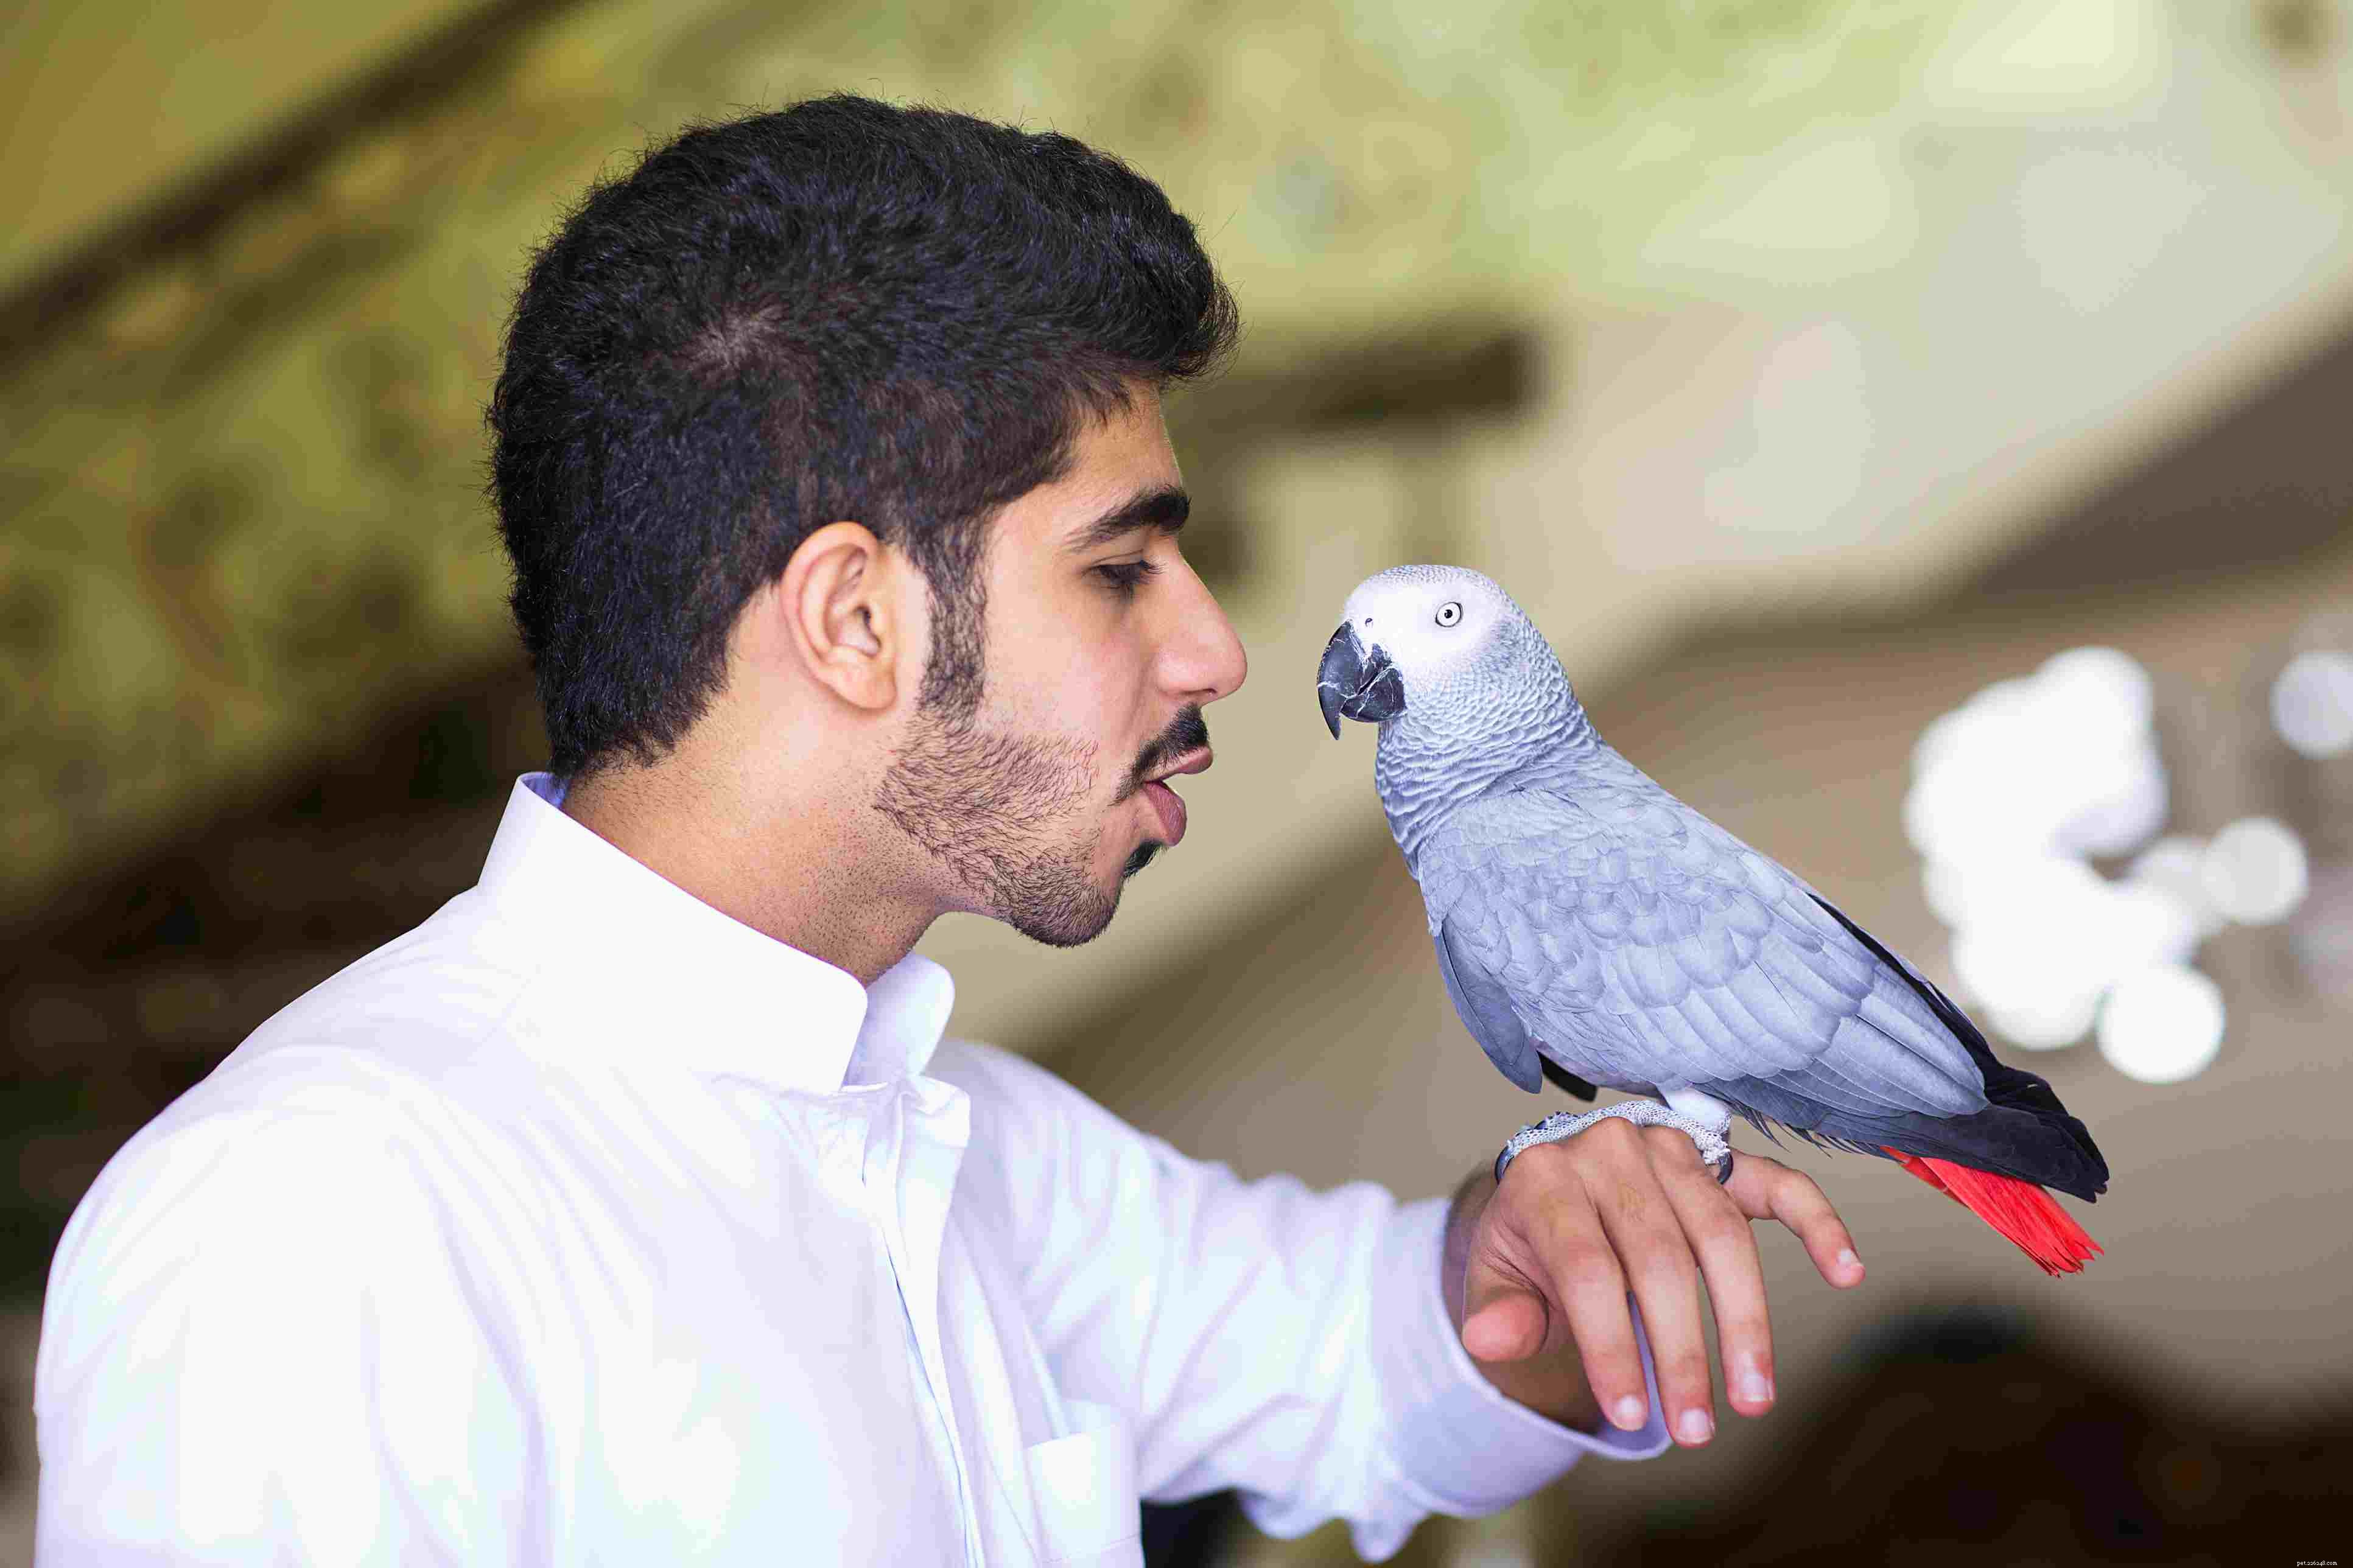 Слова и фразы для обучения попугая